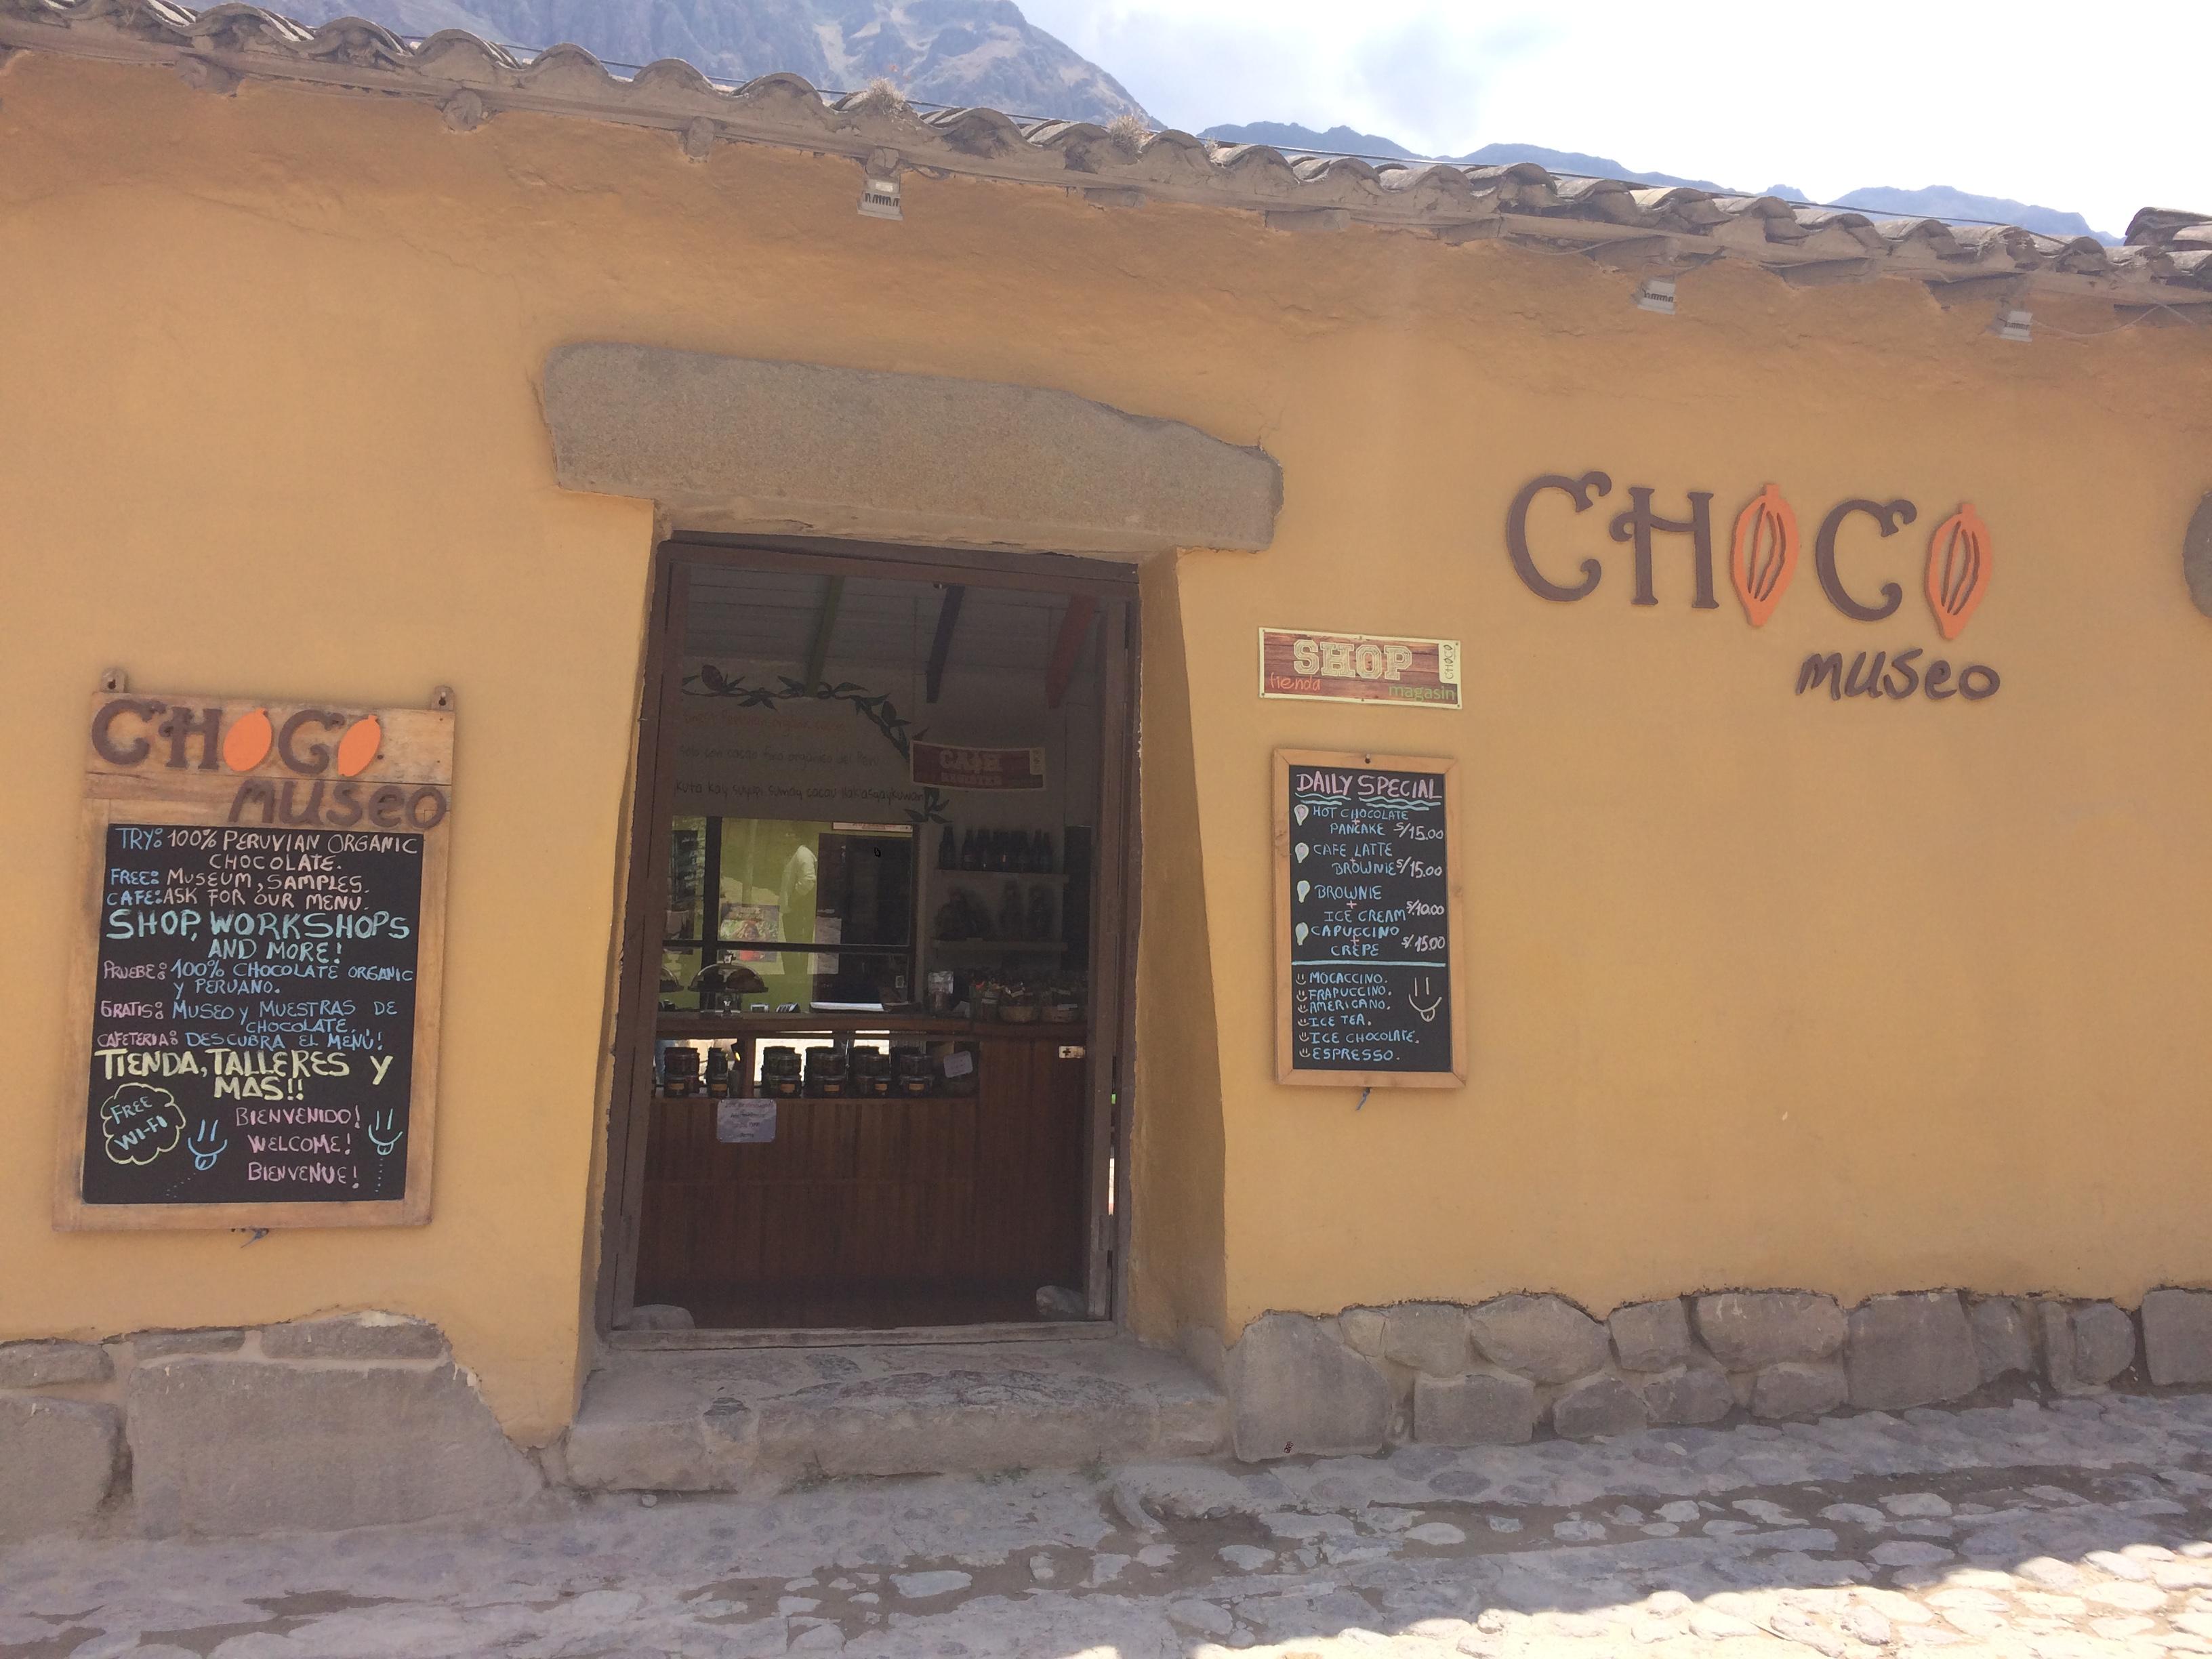  Chokolademuseet i Ollantaytambo, Peru. / / / Den mest omfattende guide derude til Ollantaytambo, Peru, en lille by på vej til Machu Picchu, som jeg havde fornøjelsen at bo i et par måneder! / #Ollantaytambo # machu Picchu # sacred #valley # valle # sagrado # Travel # Cusco #Cusco # guide # rejseplan # hvad #til #gør #Spis # chokolade # museum